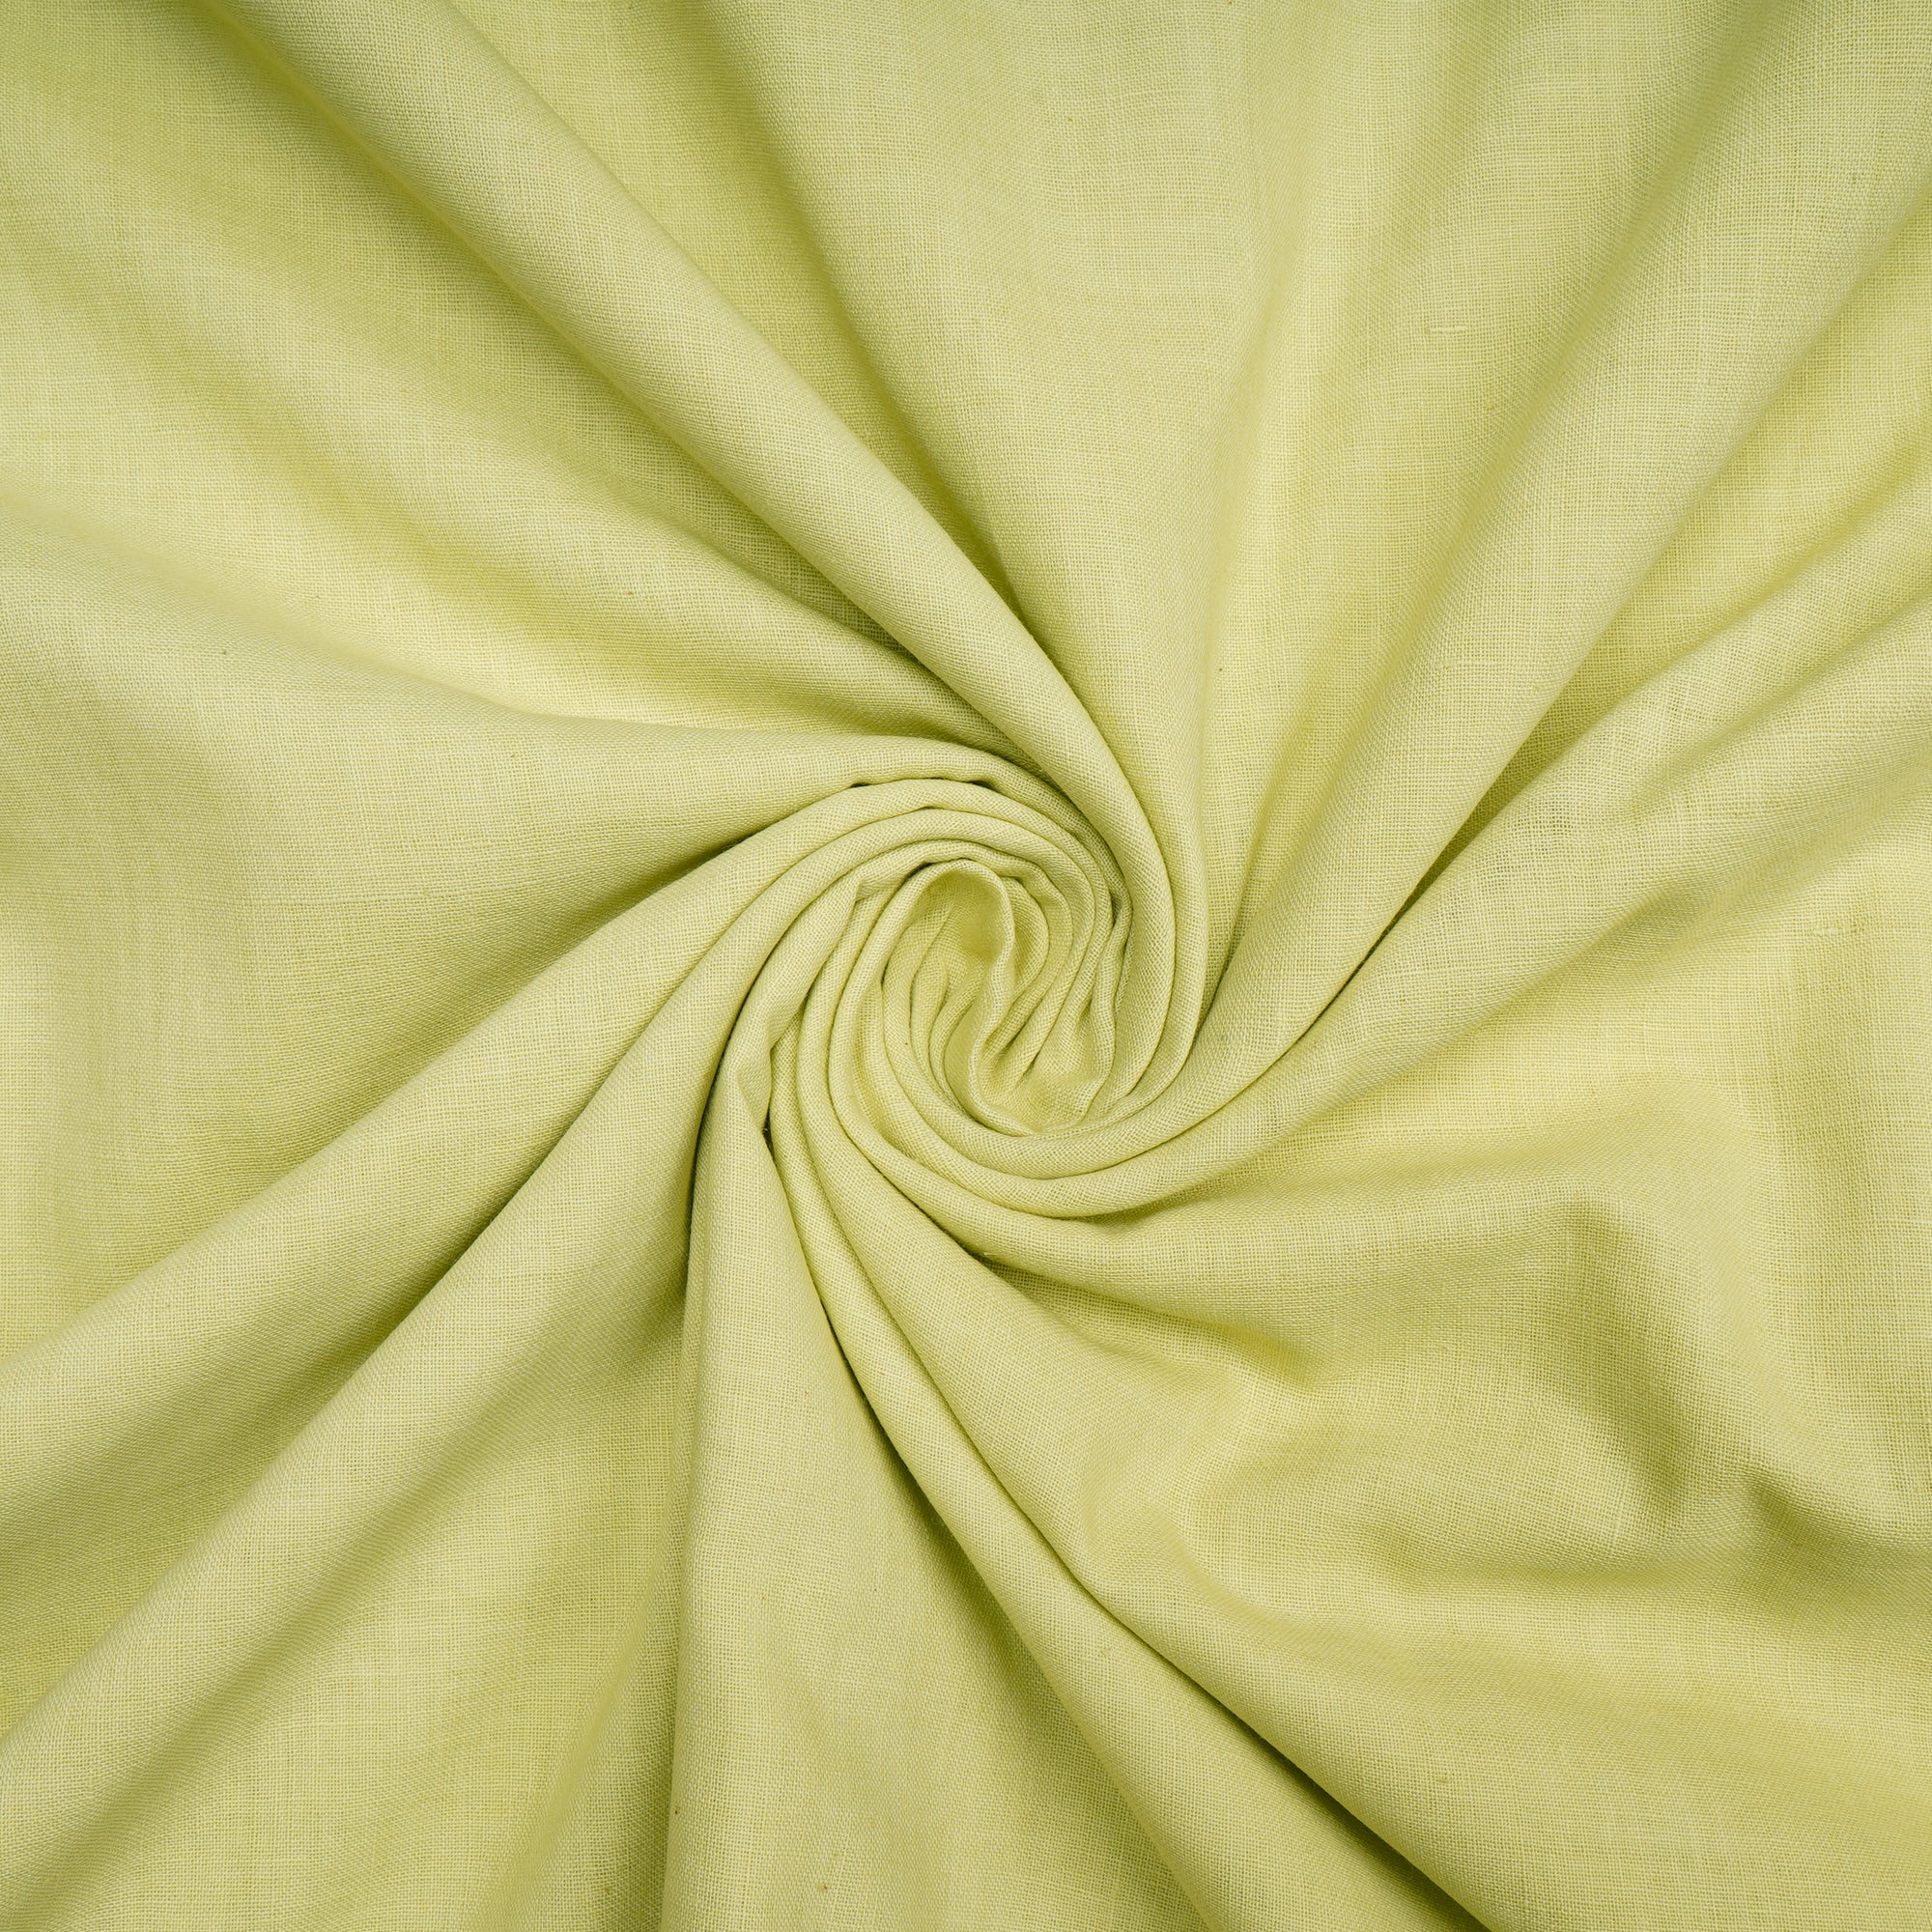 Lime Green Dyed Handwoven Handspun Muslin Cotton Fabric